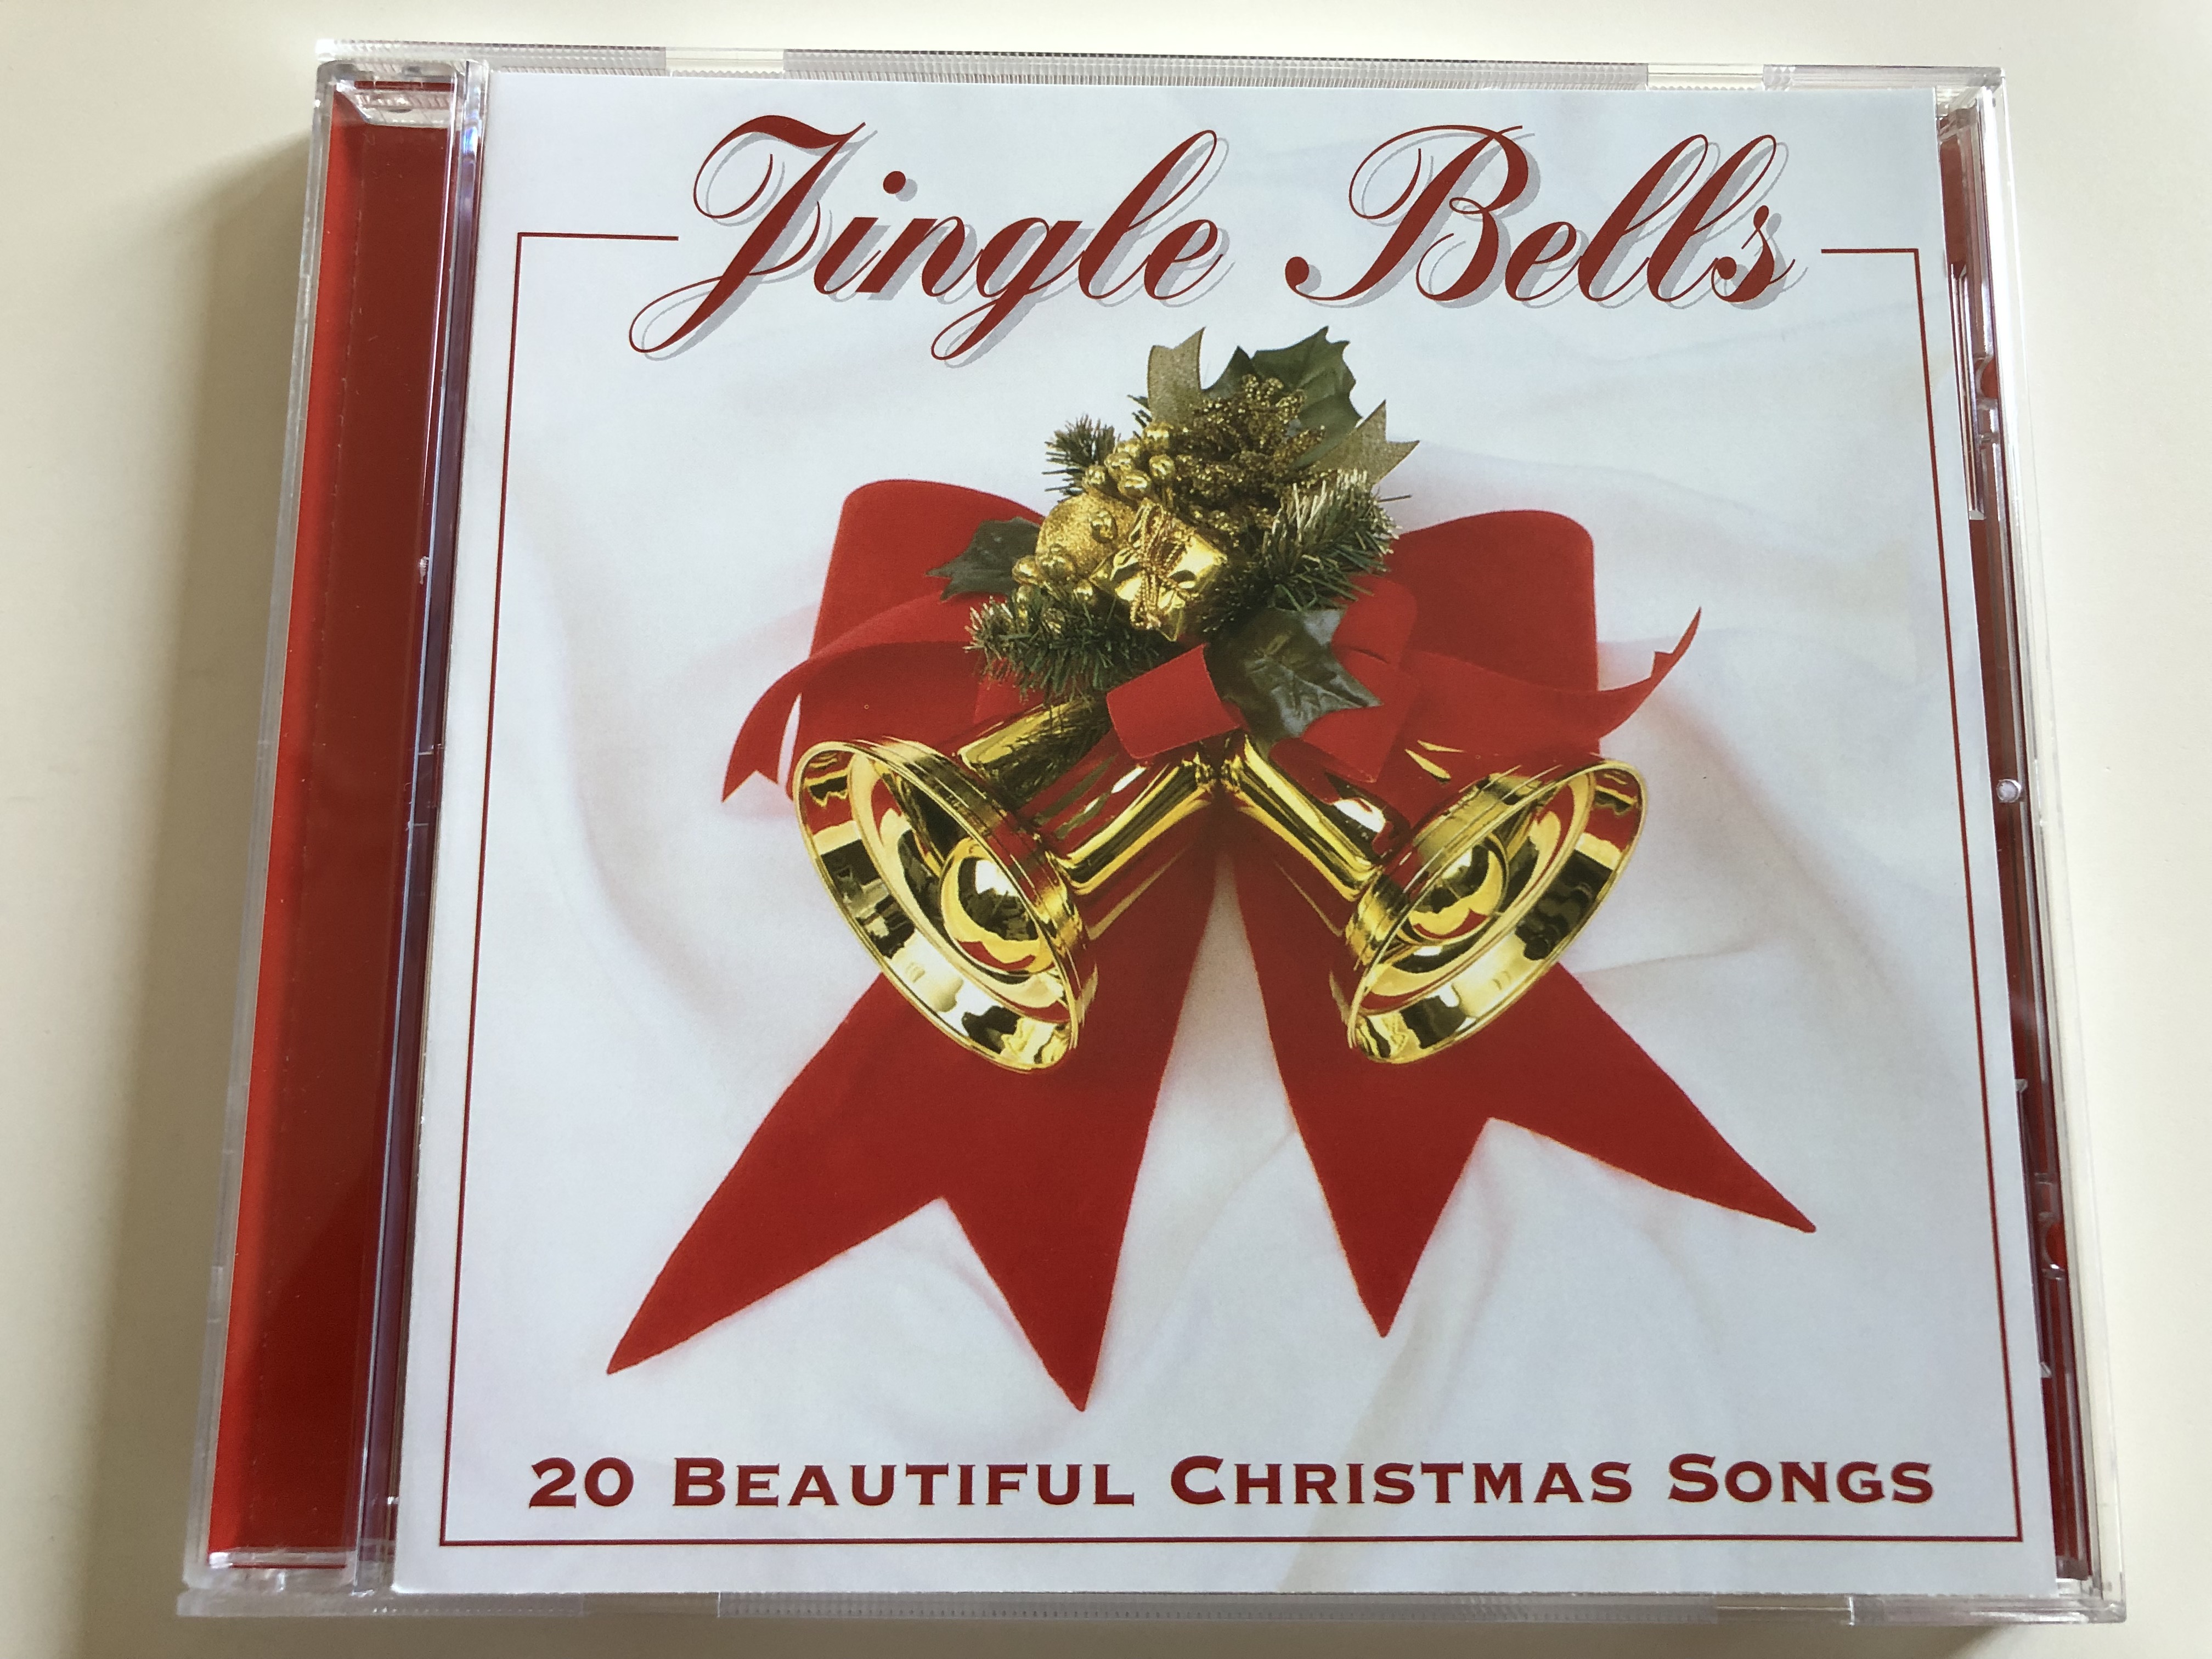 jingle-bells-20-beautiful-christmas-songs-elap-music-ltd.-audio-cd-1997-51583032-1-.jpg